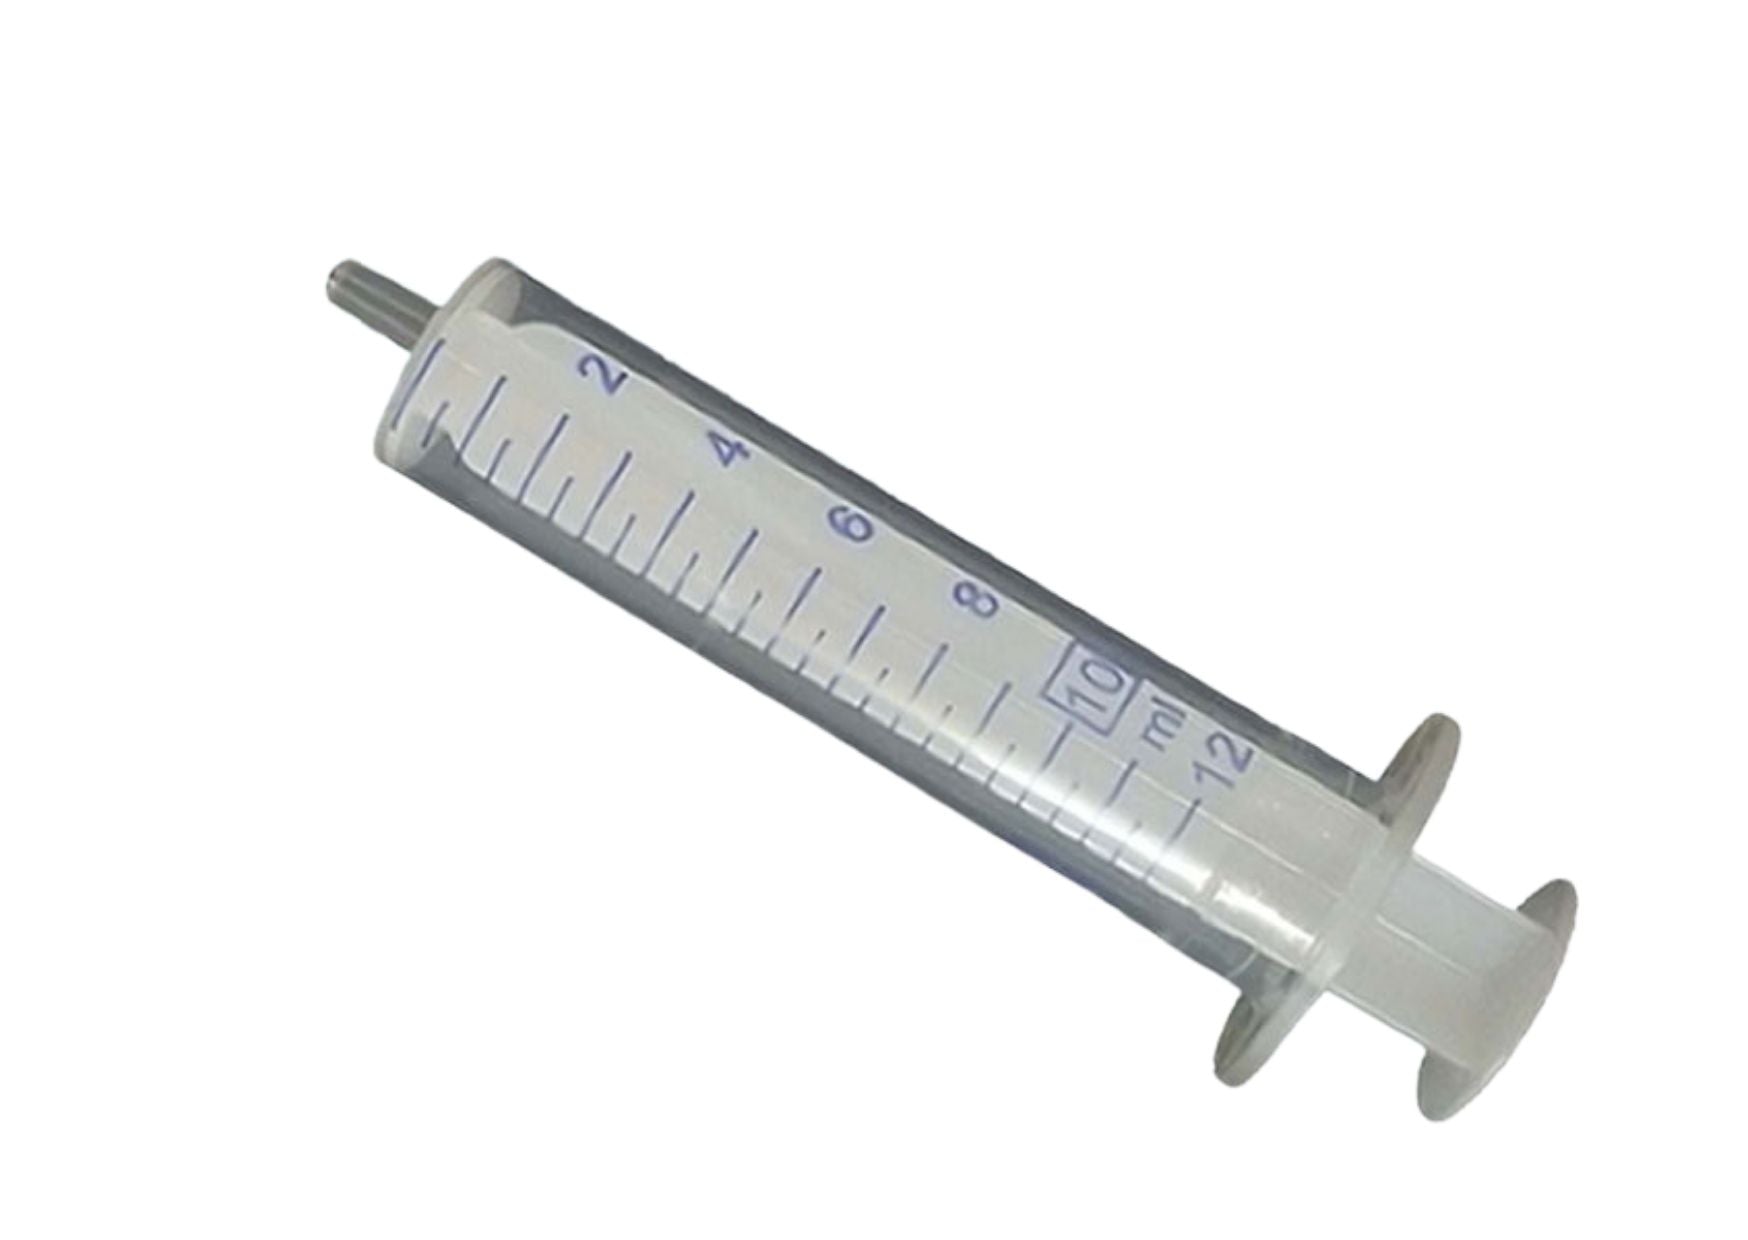 Disposable syringe, Luer attachment, 2-piece